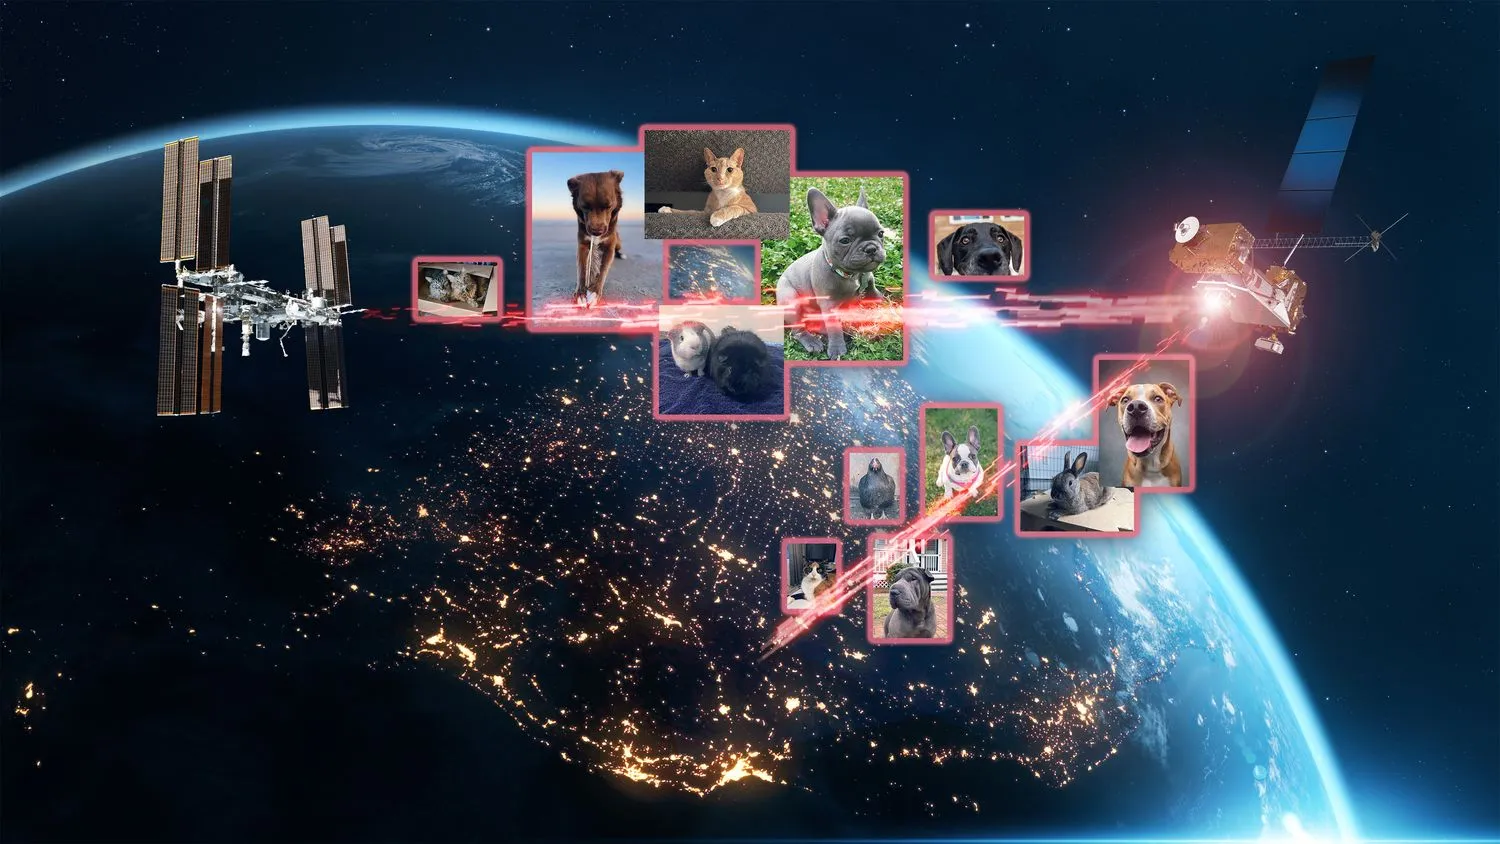 Mehr über den Artikel erfahren Bellen! Miau! Gackern! Die NASA nutzt Laser, um Bilder von Hunden, Katzen und Hühnern auf die ISS zu übertragen